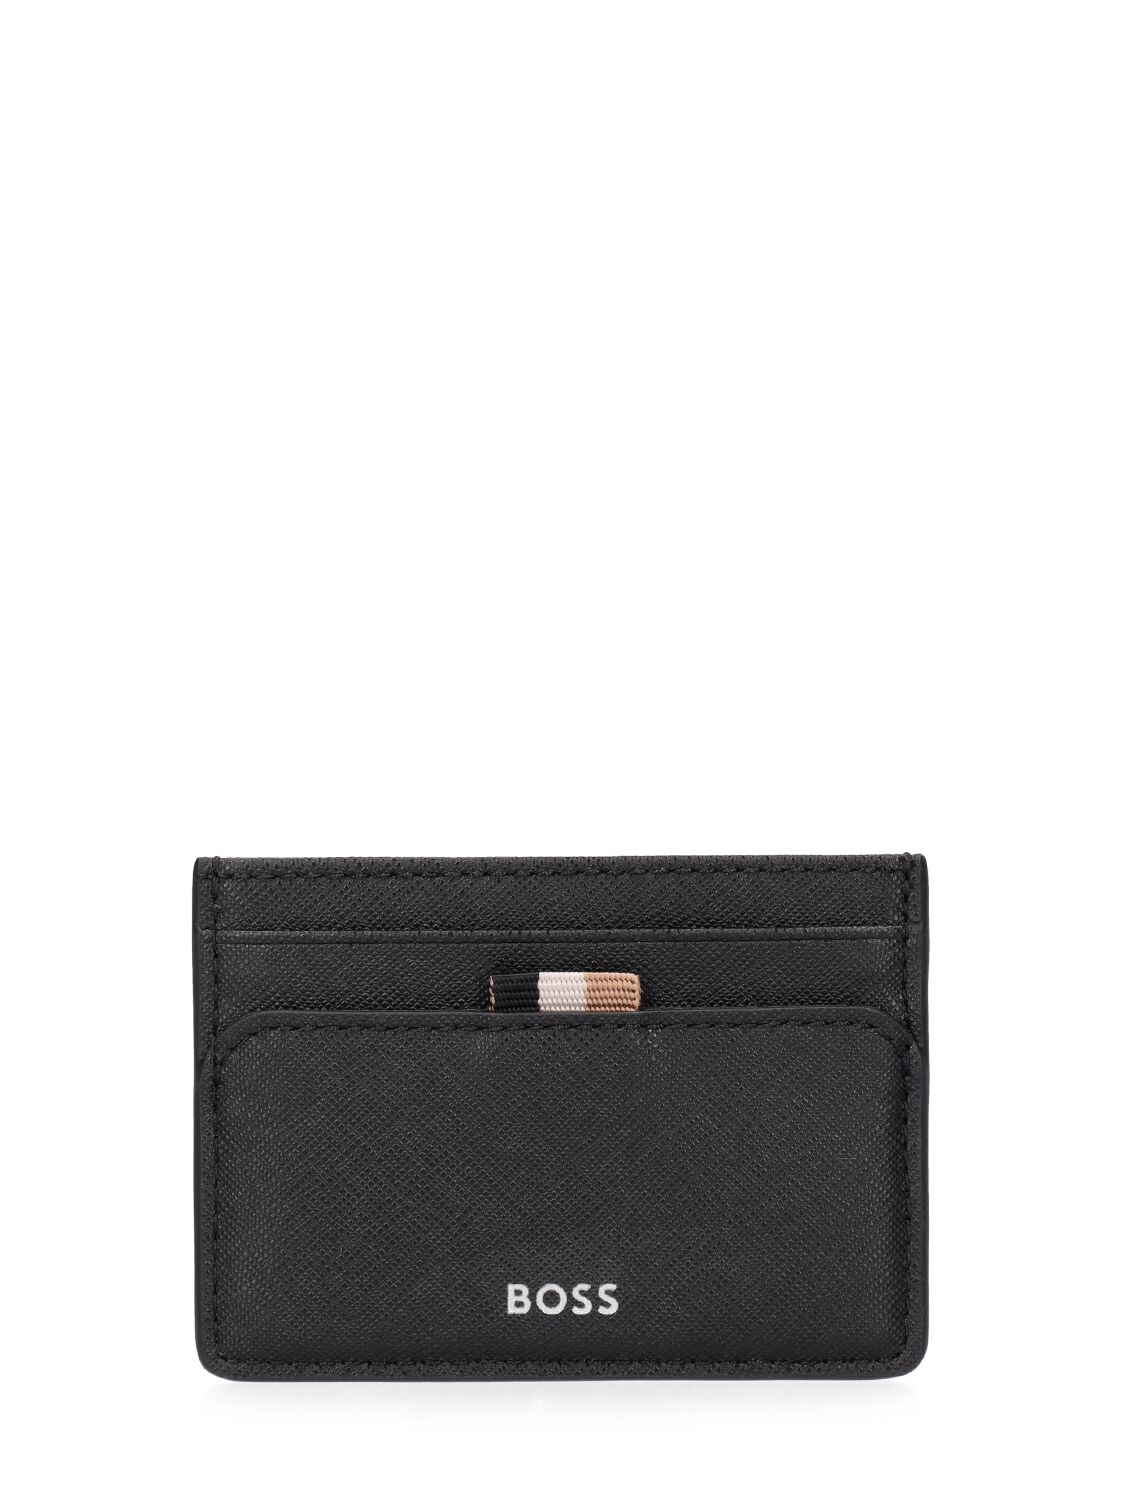 Hugo Boss Zair Card Holder In Black